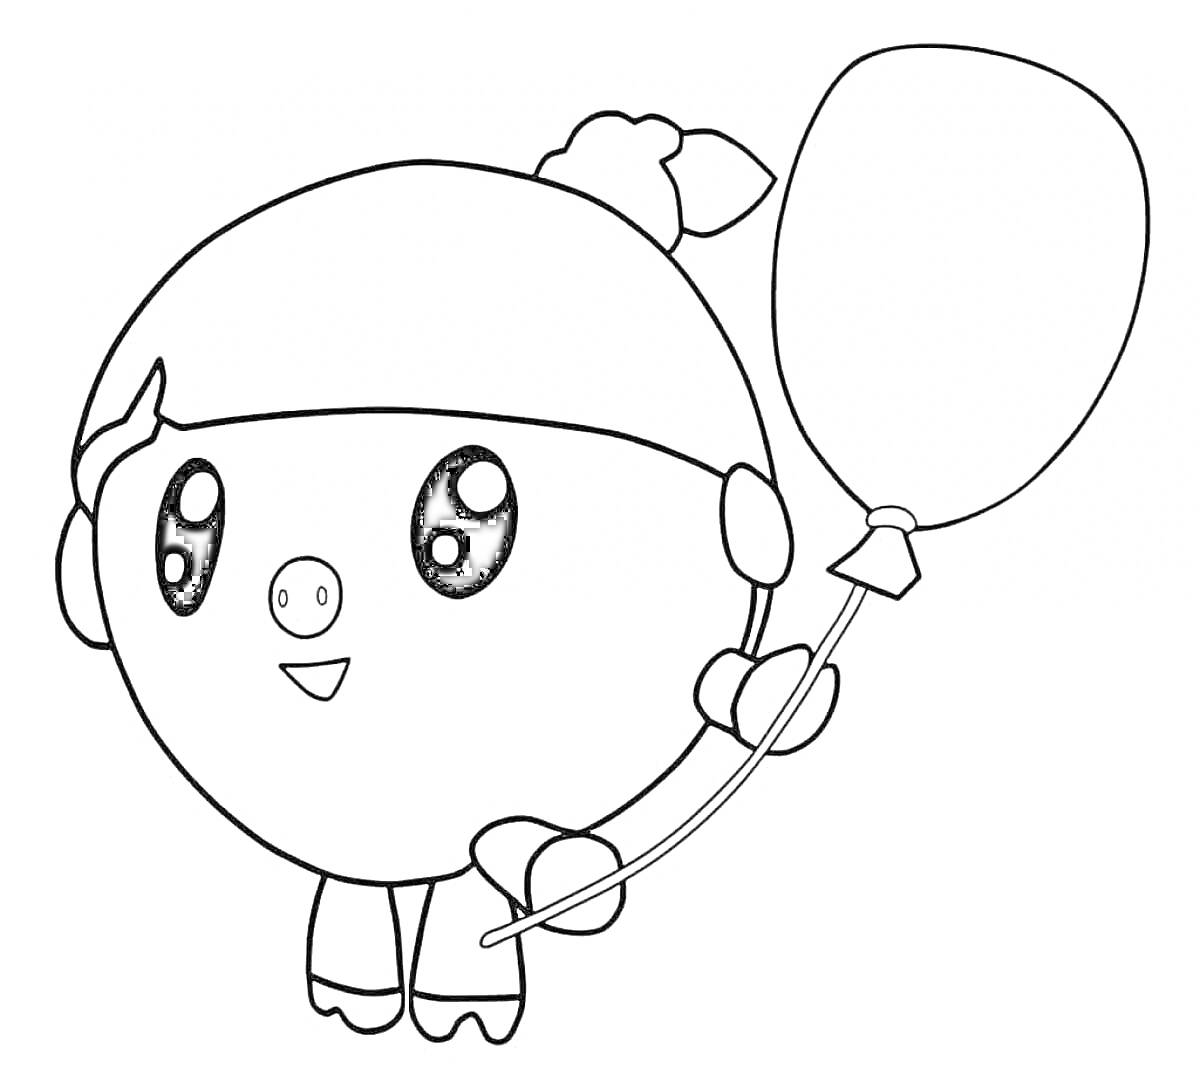 Раскраска Персонаж Малышарики с воздушным шариком